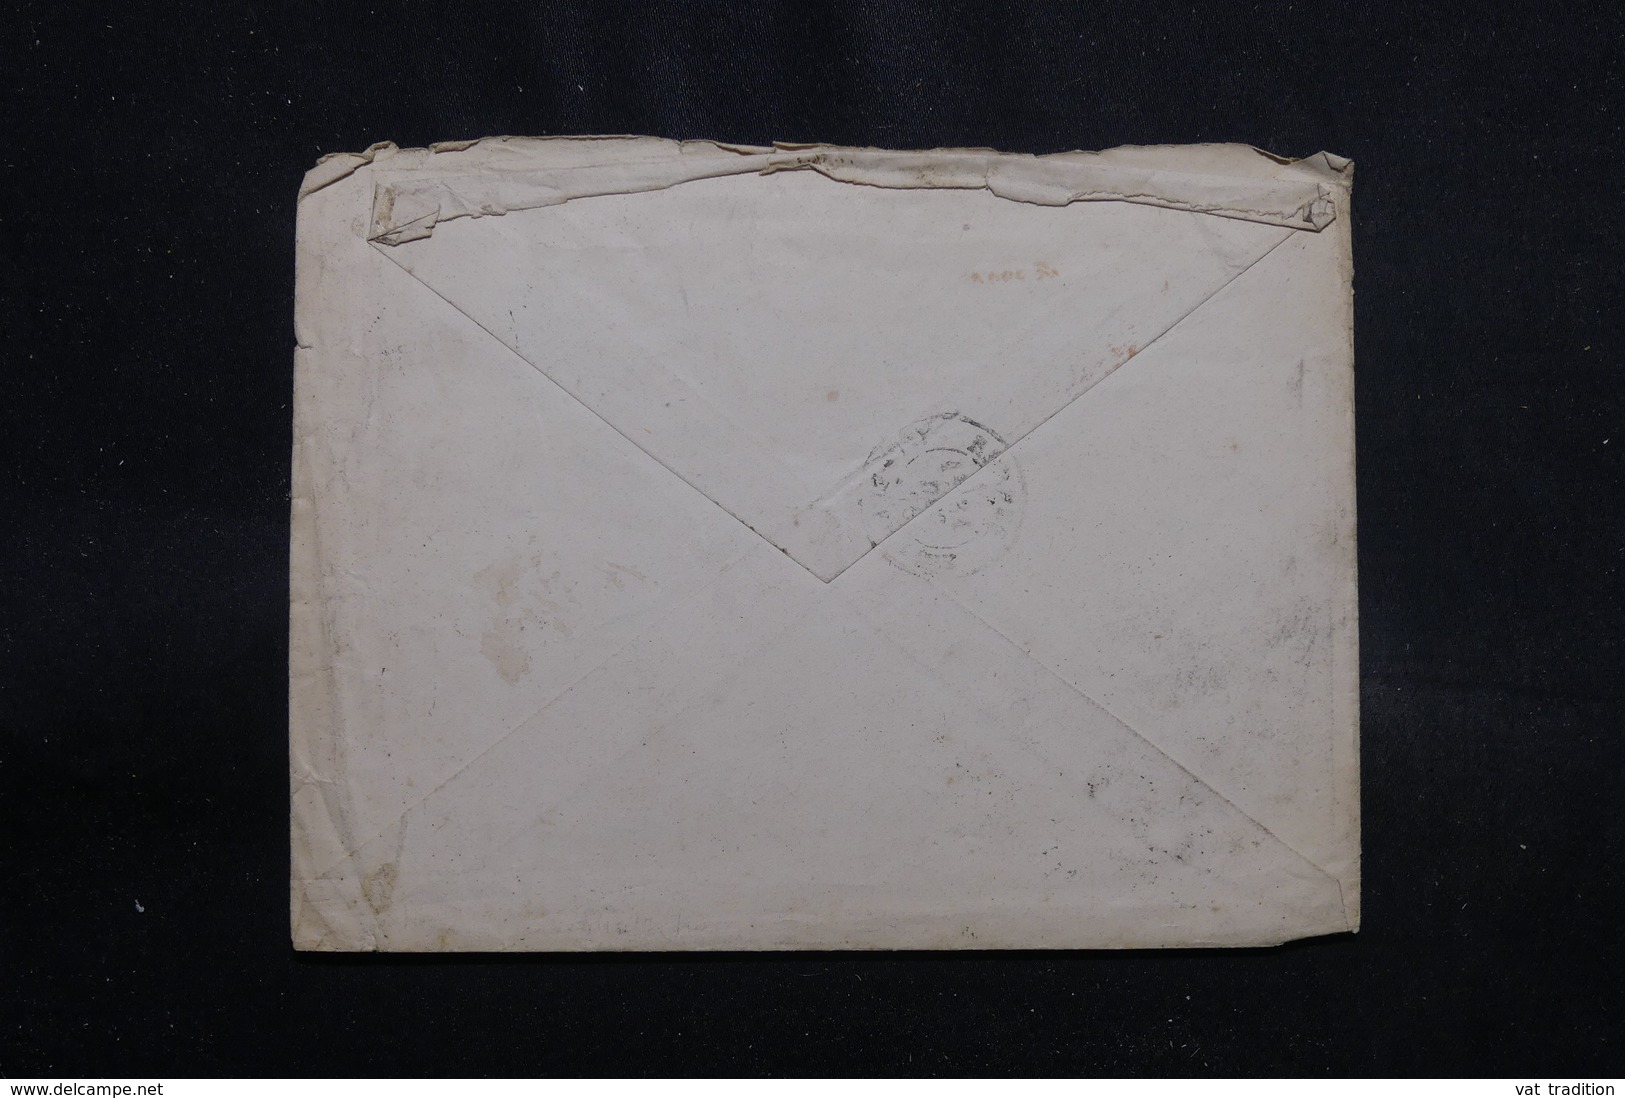 ESPAGNE - Enveloppe Pour La France En 1878, Affranchissement Plaisant - L 55399 - Lettres & Documents